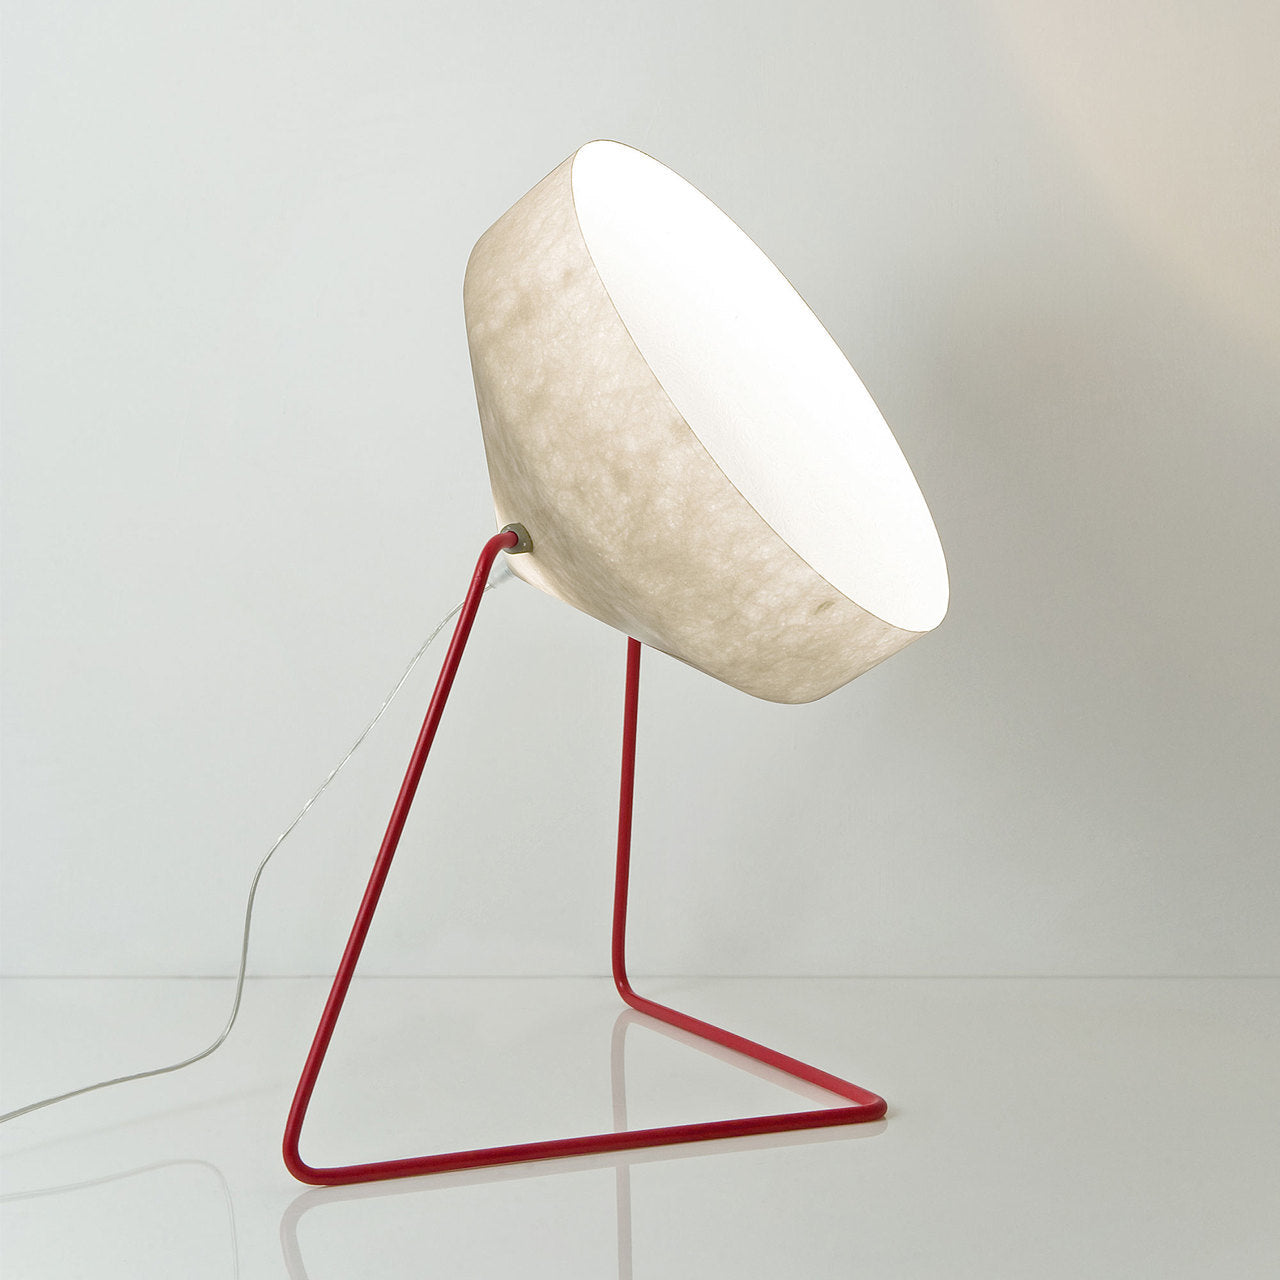 In-es.artdesign Cyrus F Nebula Floor Lamp